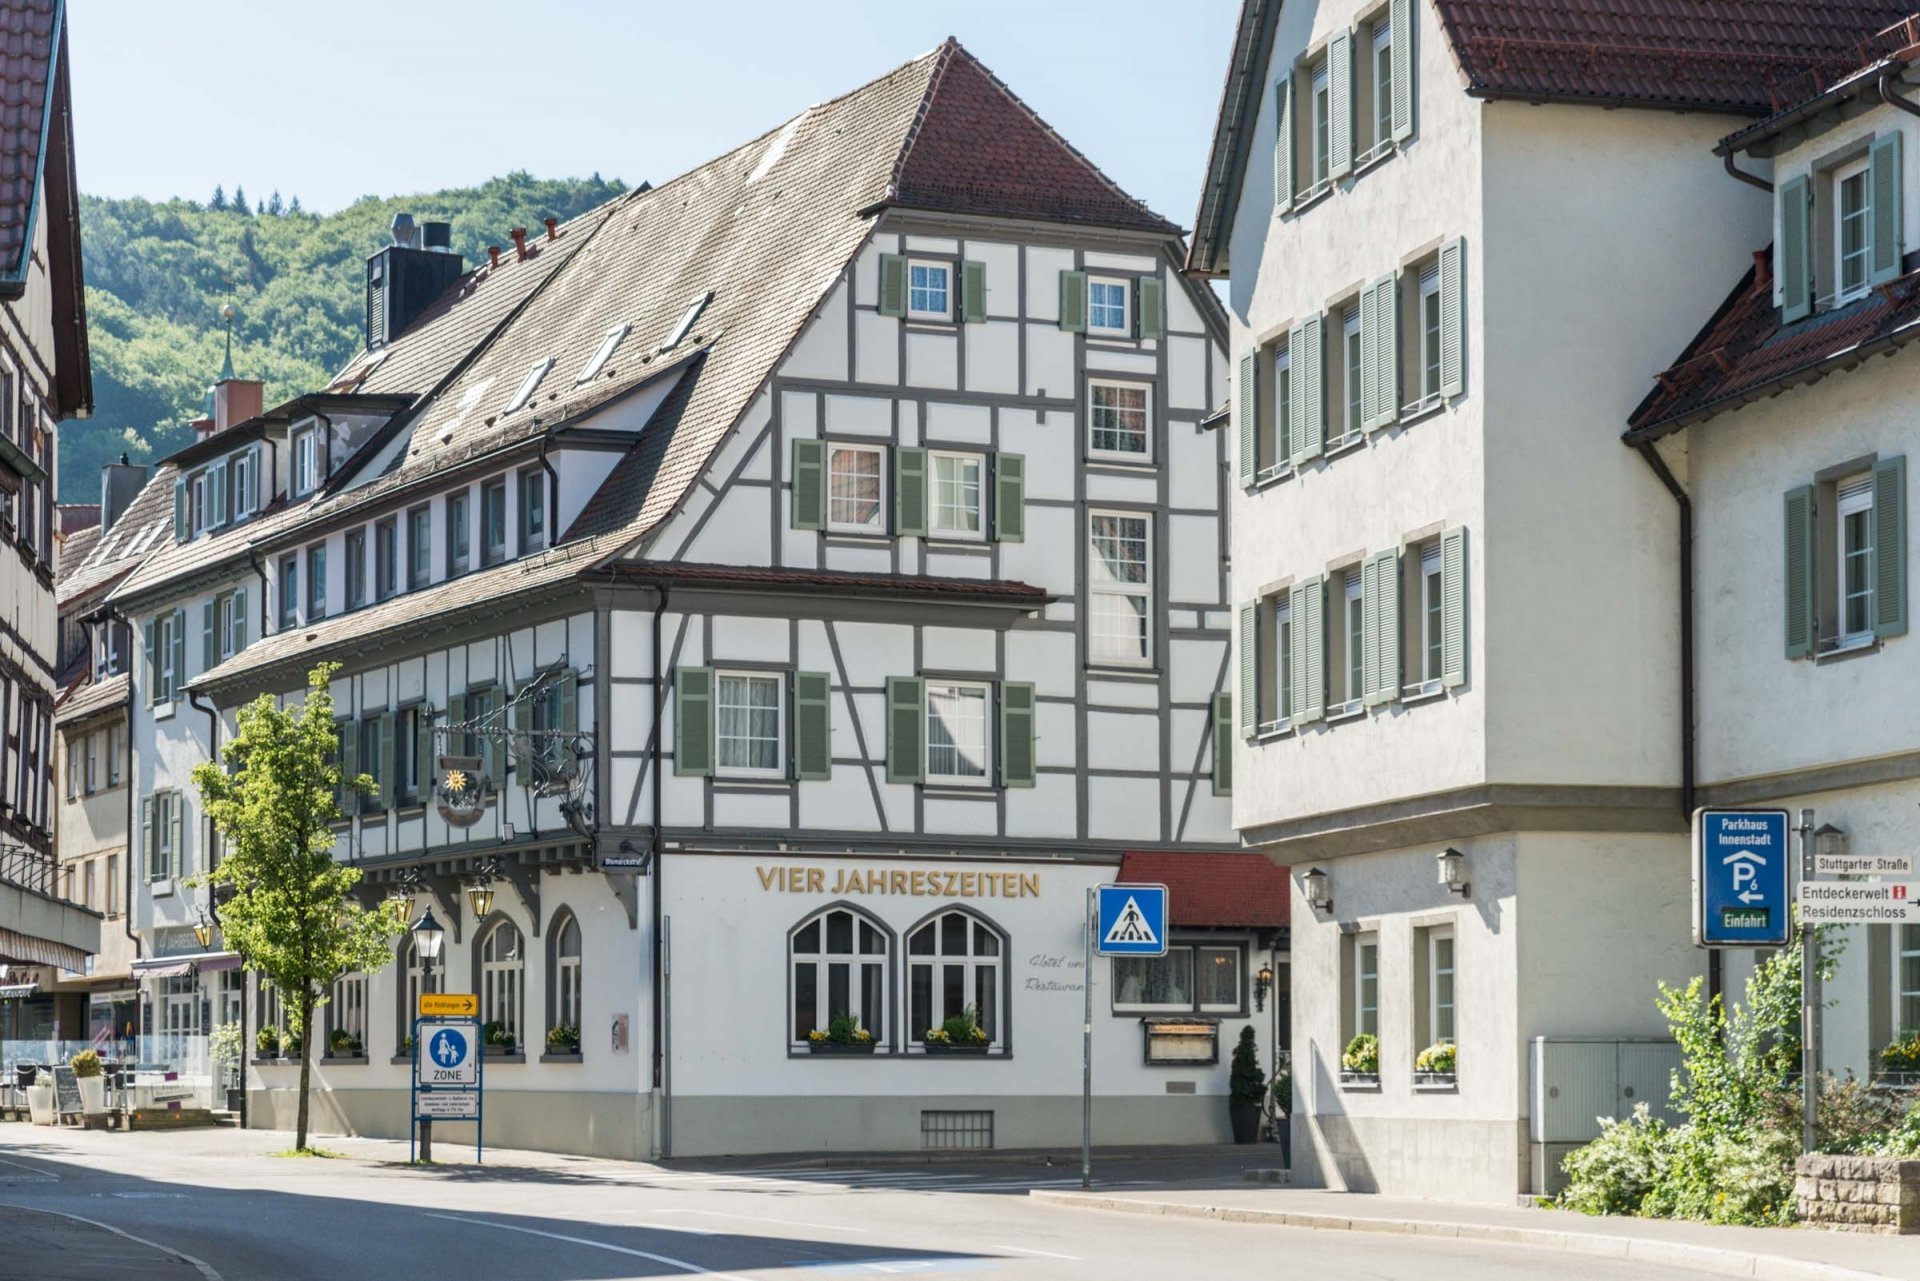 4 Tage / 3 Nächte Premium Wandern im Biosphärengebiet Schwäbische ALB – Flair Hotel Vier Jahreszeiten (3.5 Sterne) in Bad Urach, Baden-Württemberg inkl. Halbpension